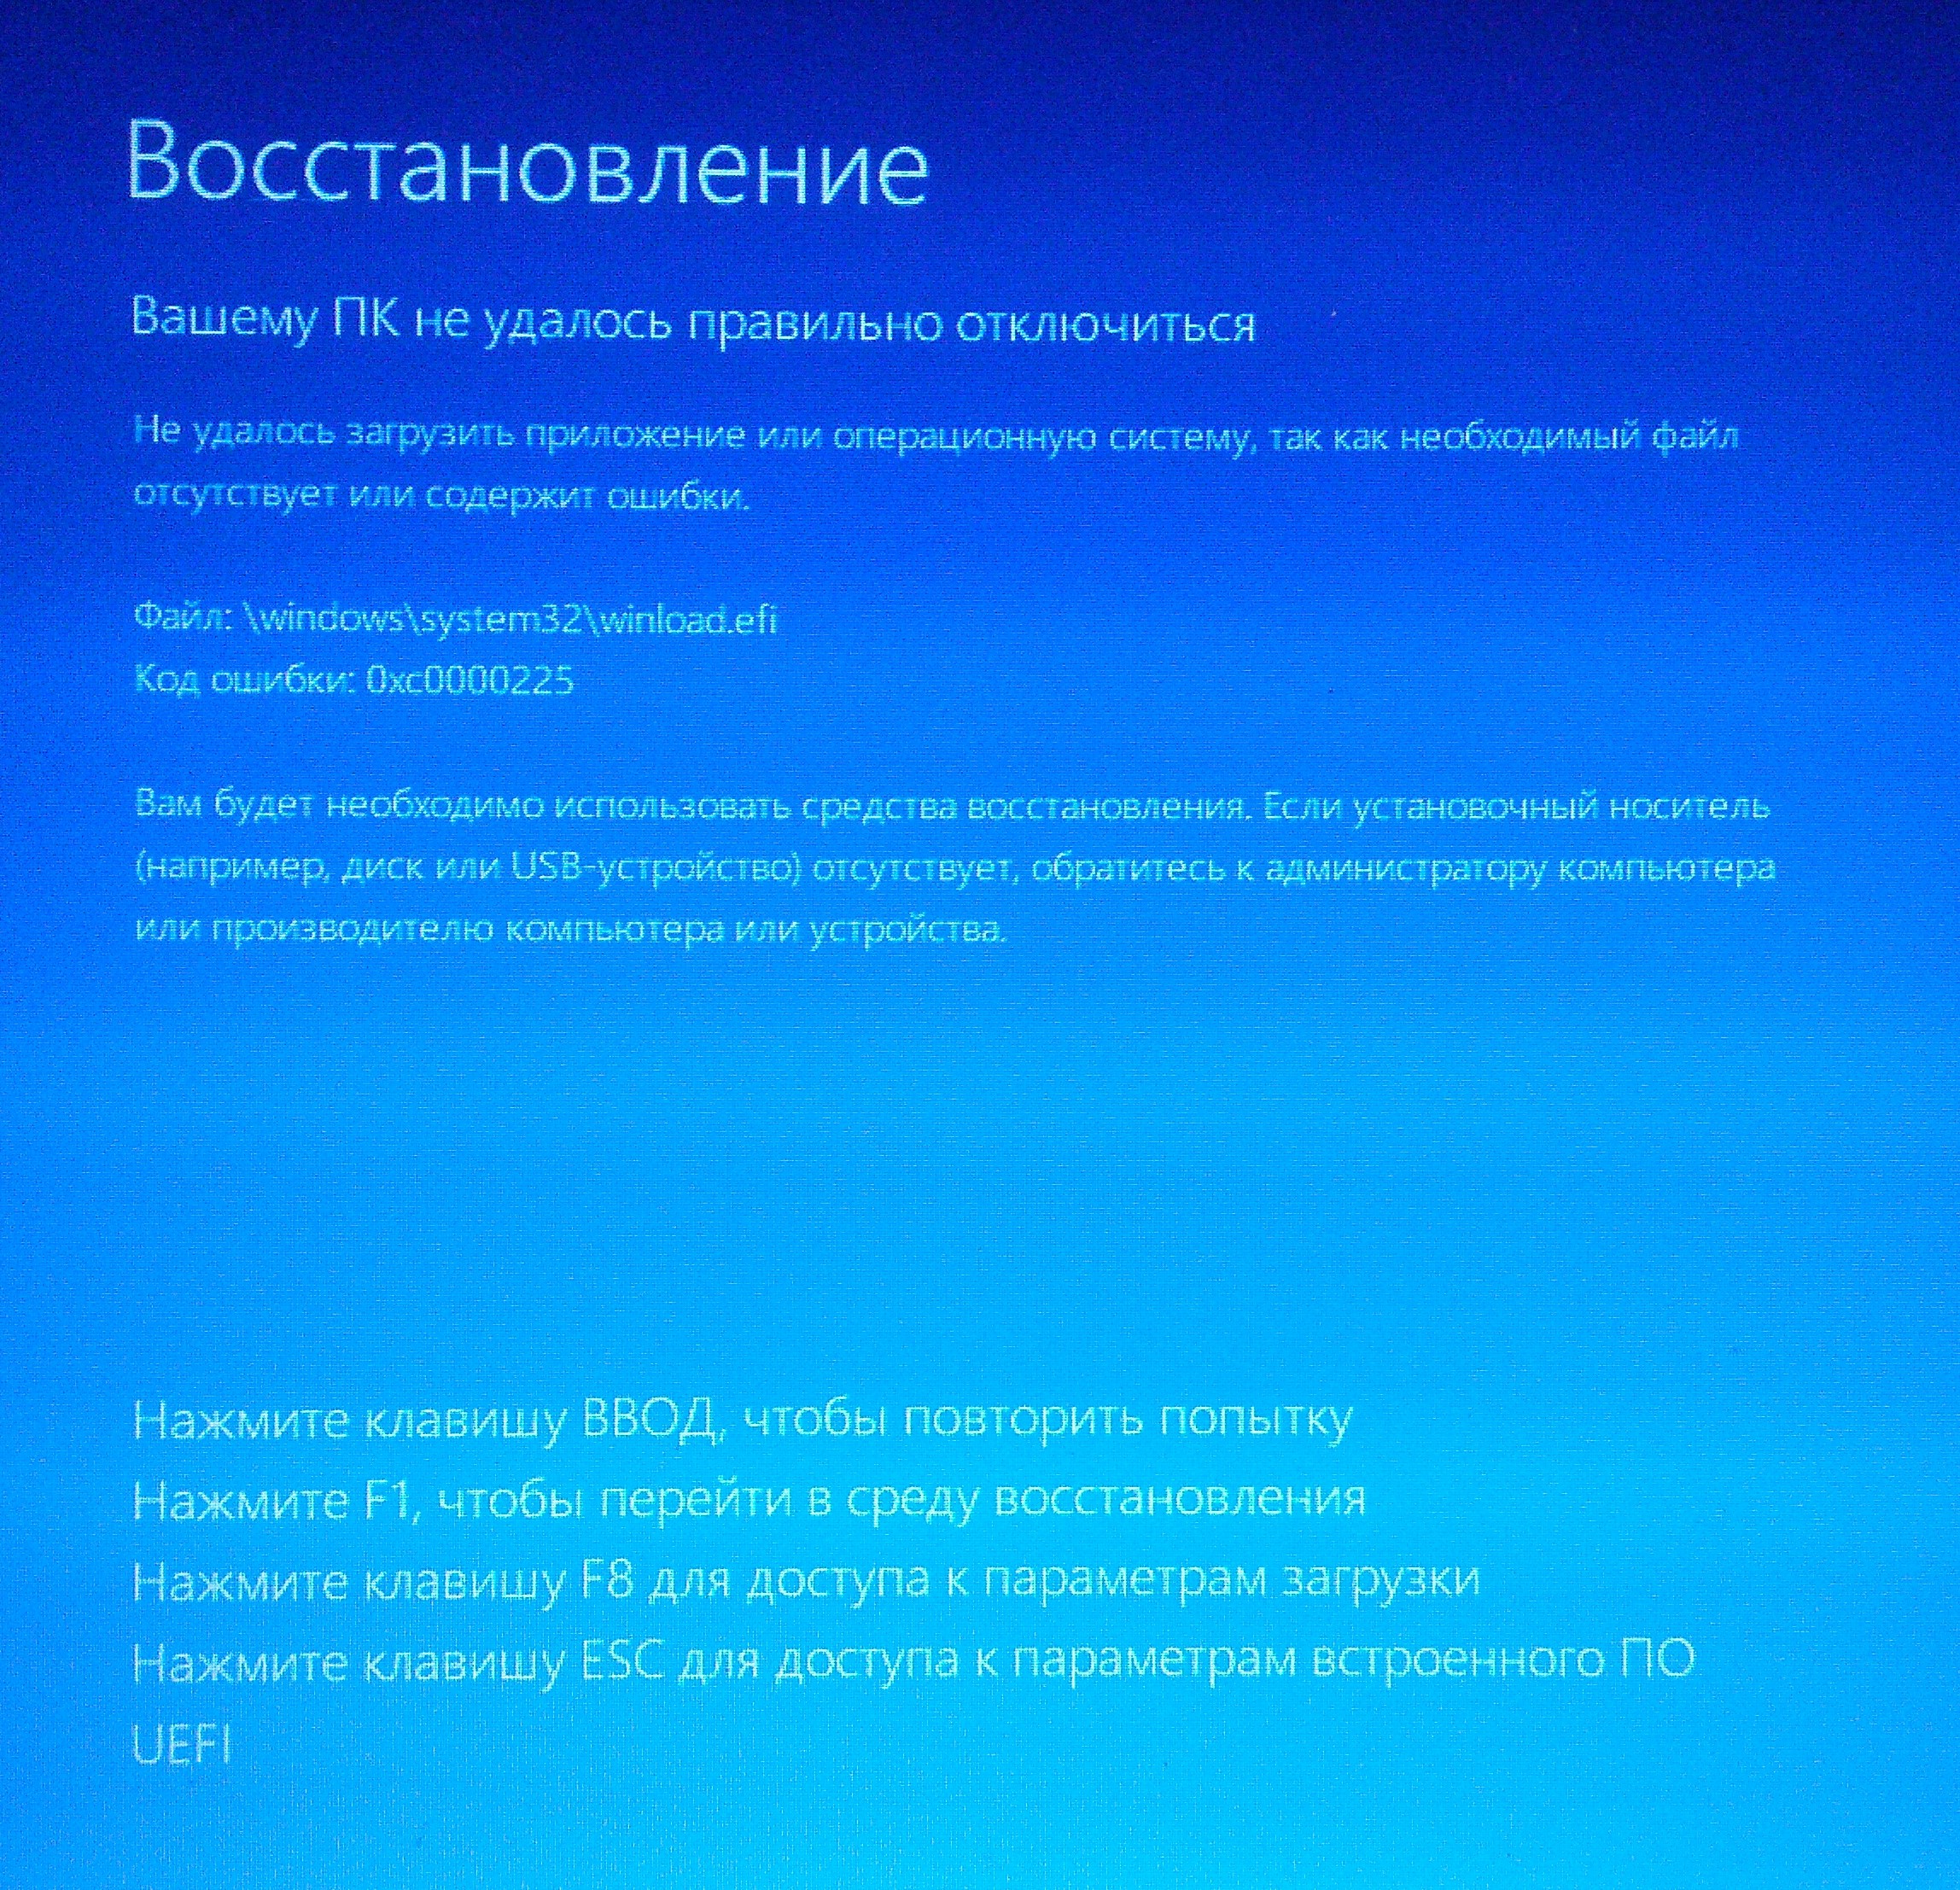 Windows recovered. Восстановление виндовс. Восстановление Windows 8.1. 8. Как восстановить систему?. Восстановление системы Windows 8.1.